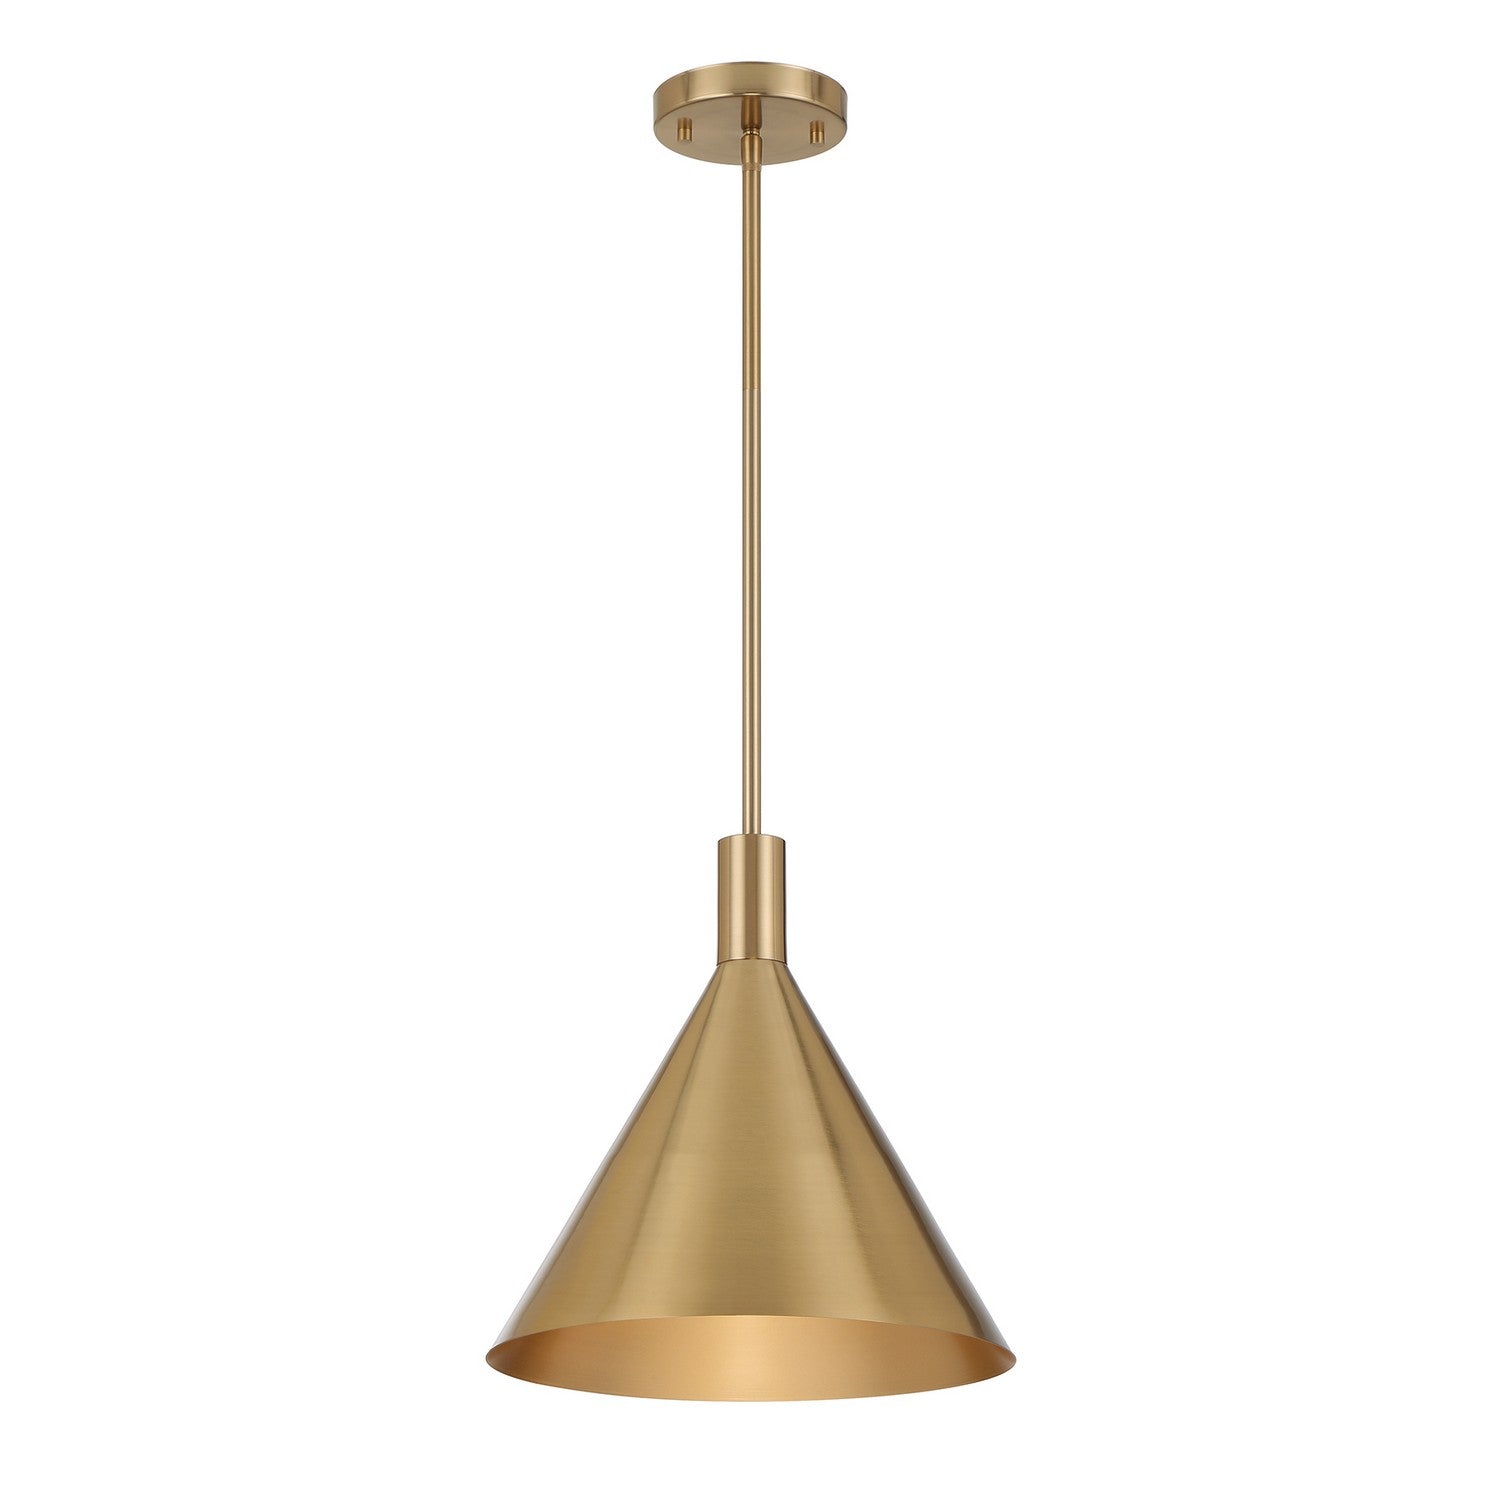 Savoy House - 7-8001-1-127 - One Light Pendant - Pharos - Noble Brass